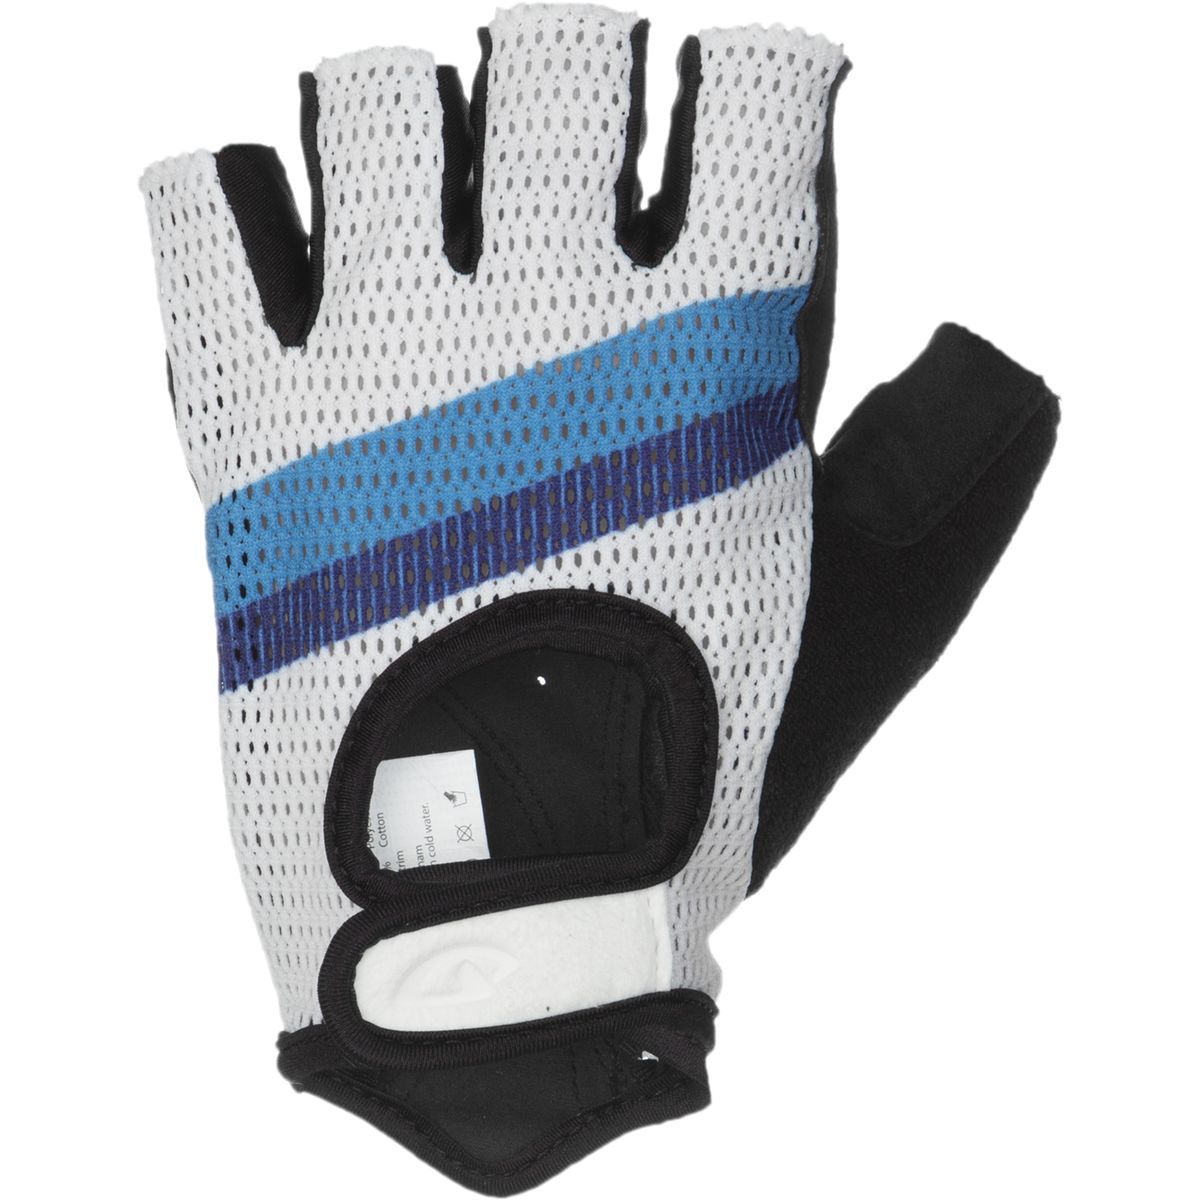 Giro Siv Glove - Men's